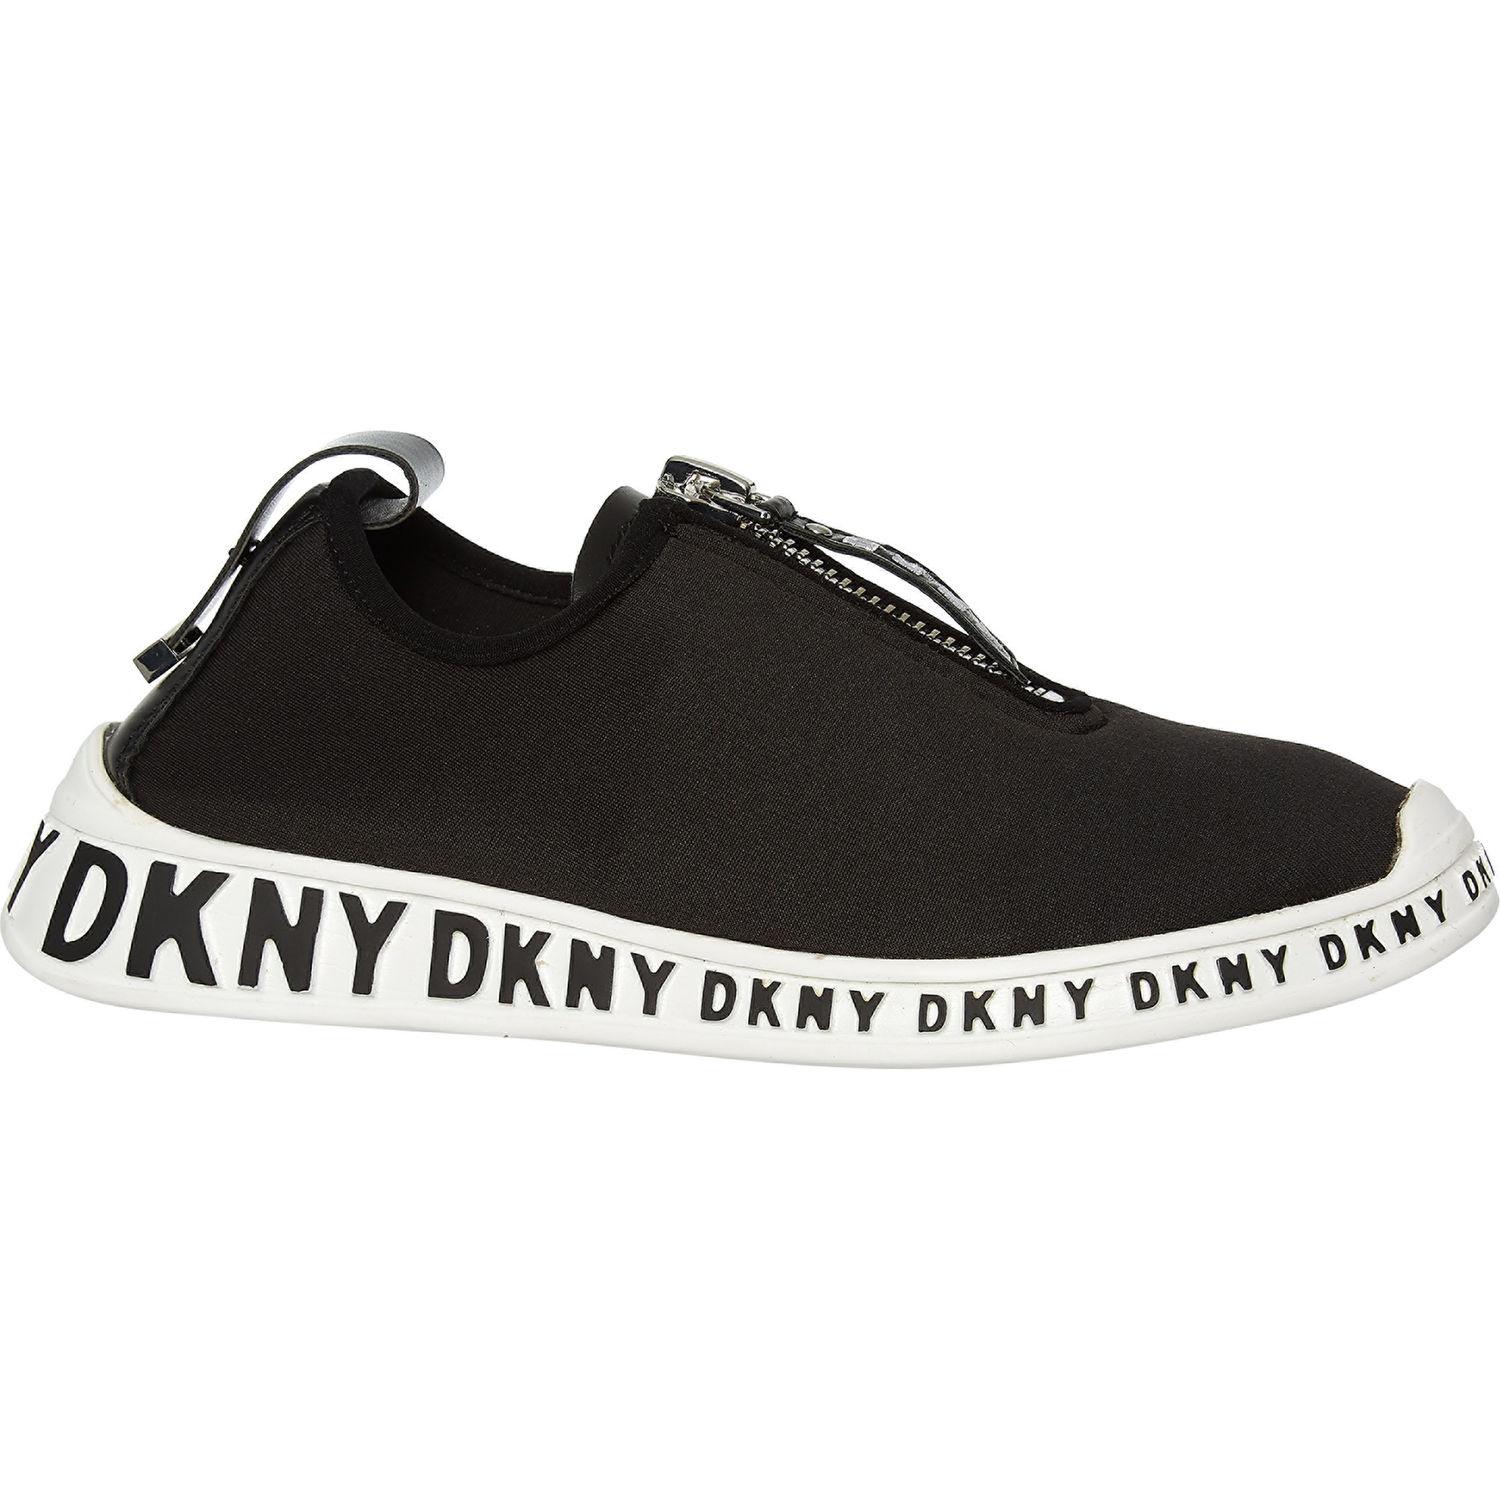 dkny shoes tk maxx